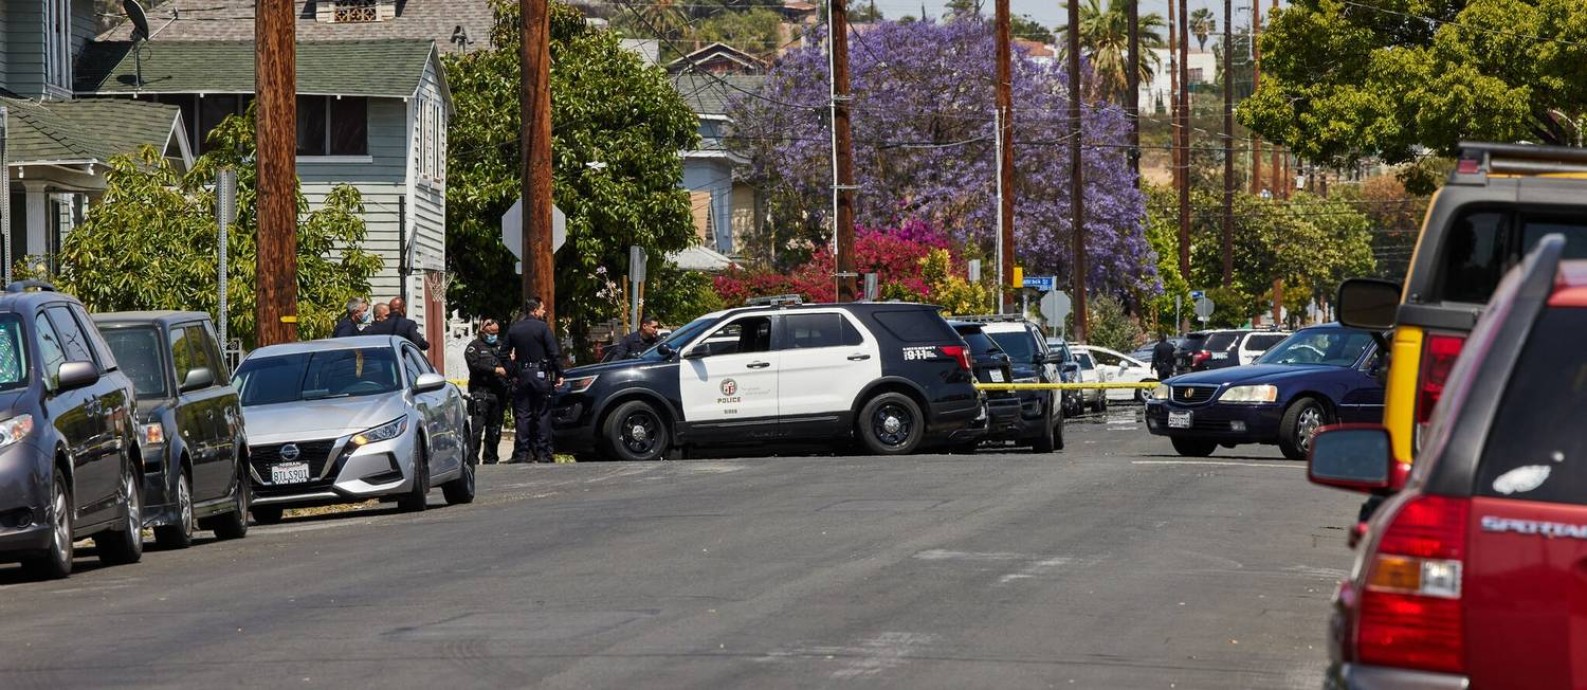 Os assassinatos aumentaram 36% no ano passado em Los Angeles Foto: Ryan Young / The New York Times